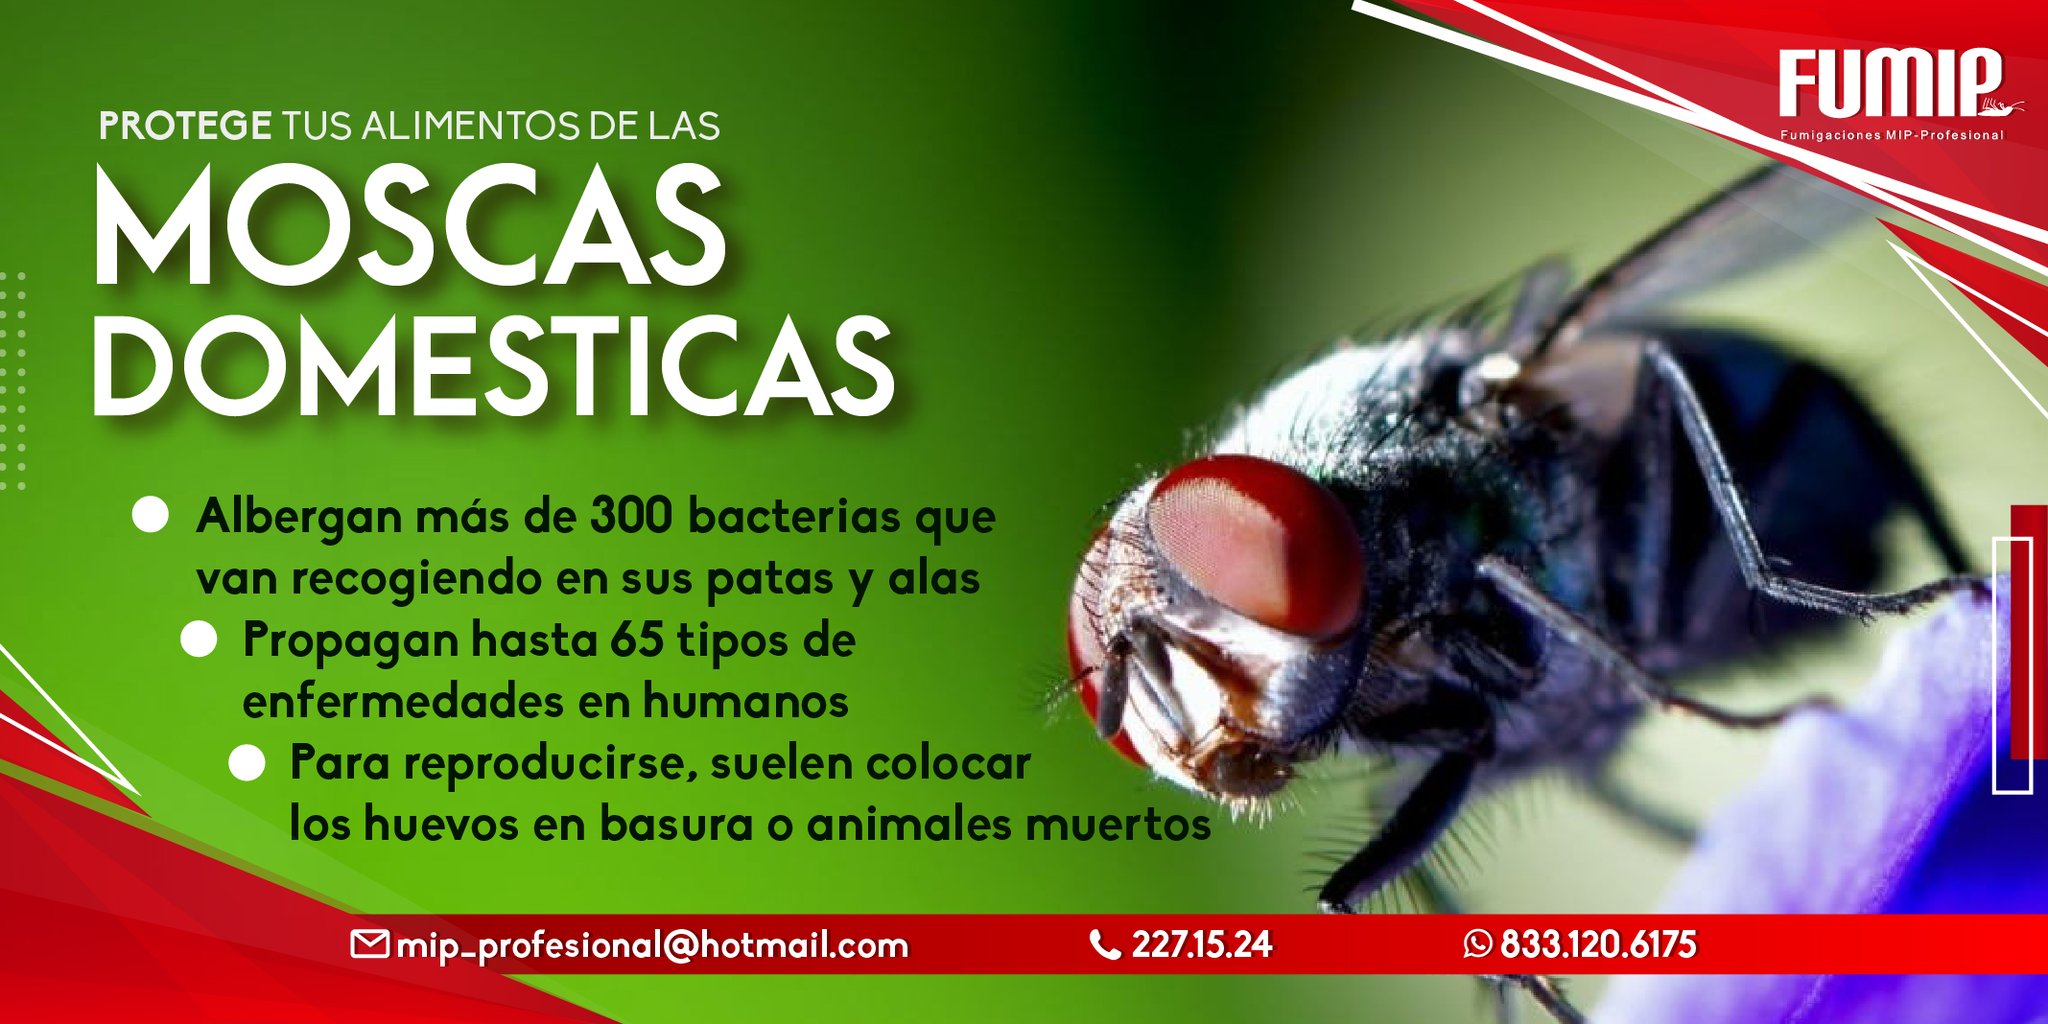 Fumigaciones MIP Profesional on Twitter: "➡️Las moscas transportan hasta más de 300 gérmenes que van recogiendo y propagando hasta 65 tipos de enfermedades. ✓Protege alimentos de las moscas! 🪰🪰🪰 ¡Comunícate con